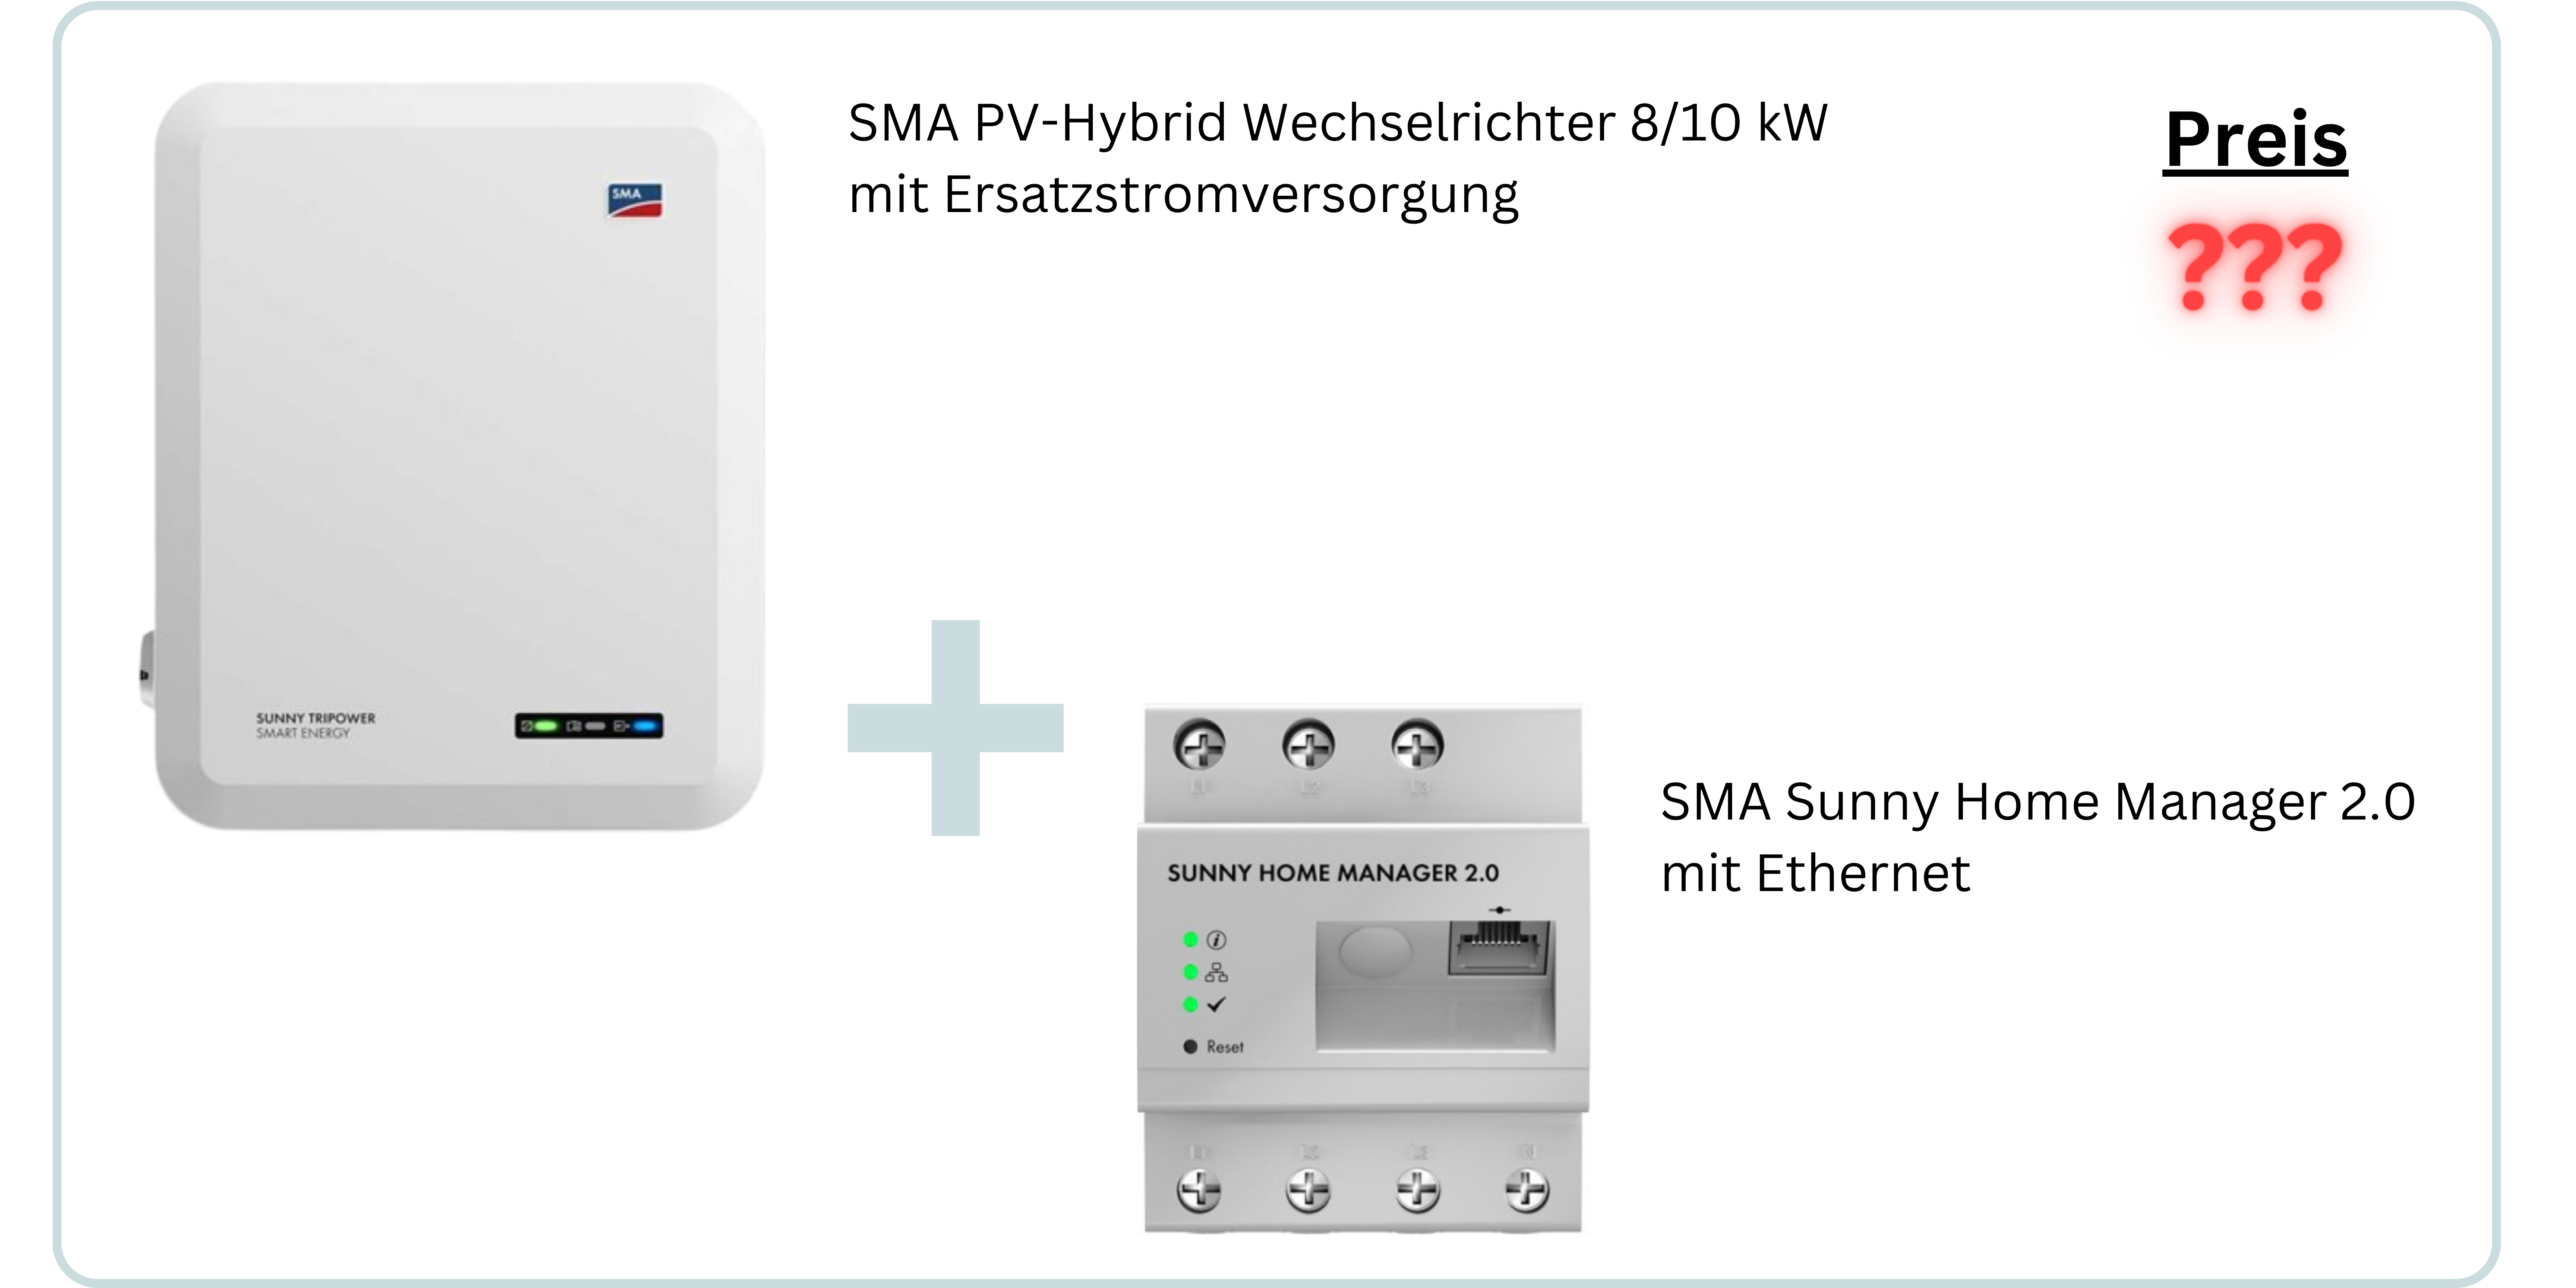 Das SMA-Paket beinhaltet einen SMA PV-Hybrid Wechselrichter und einen SMA Sunny Home Manager 2.0.